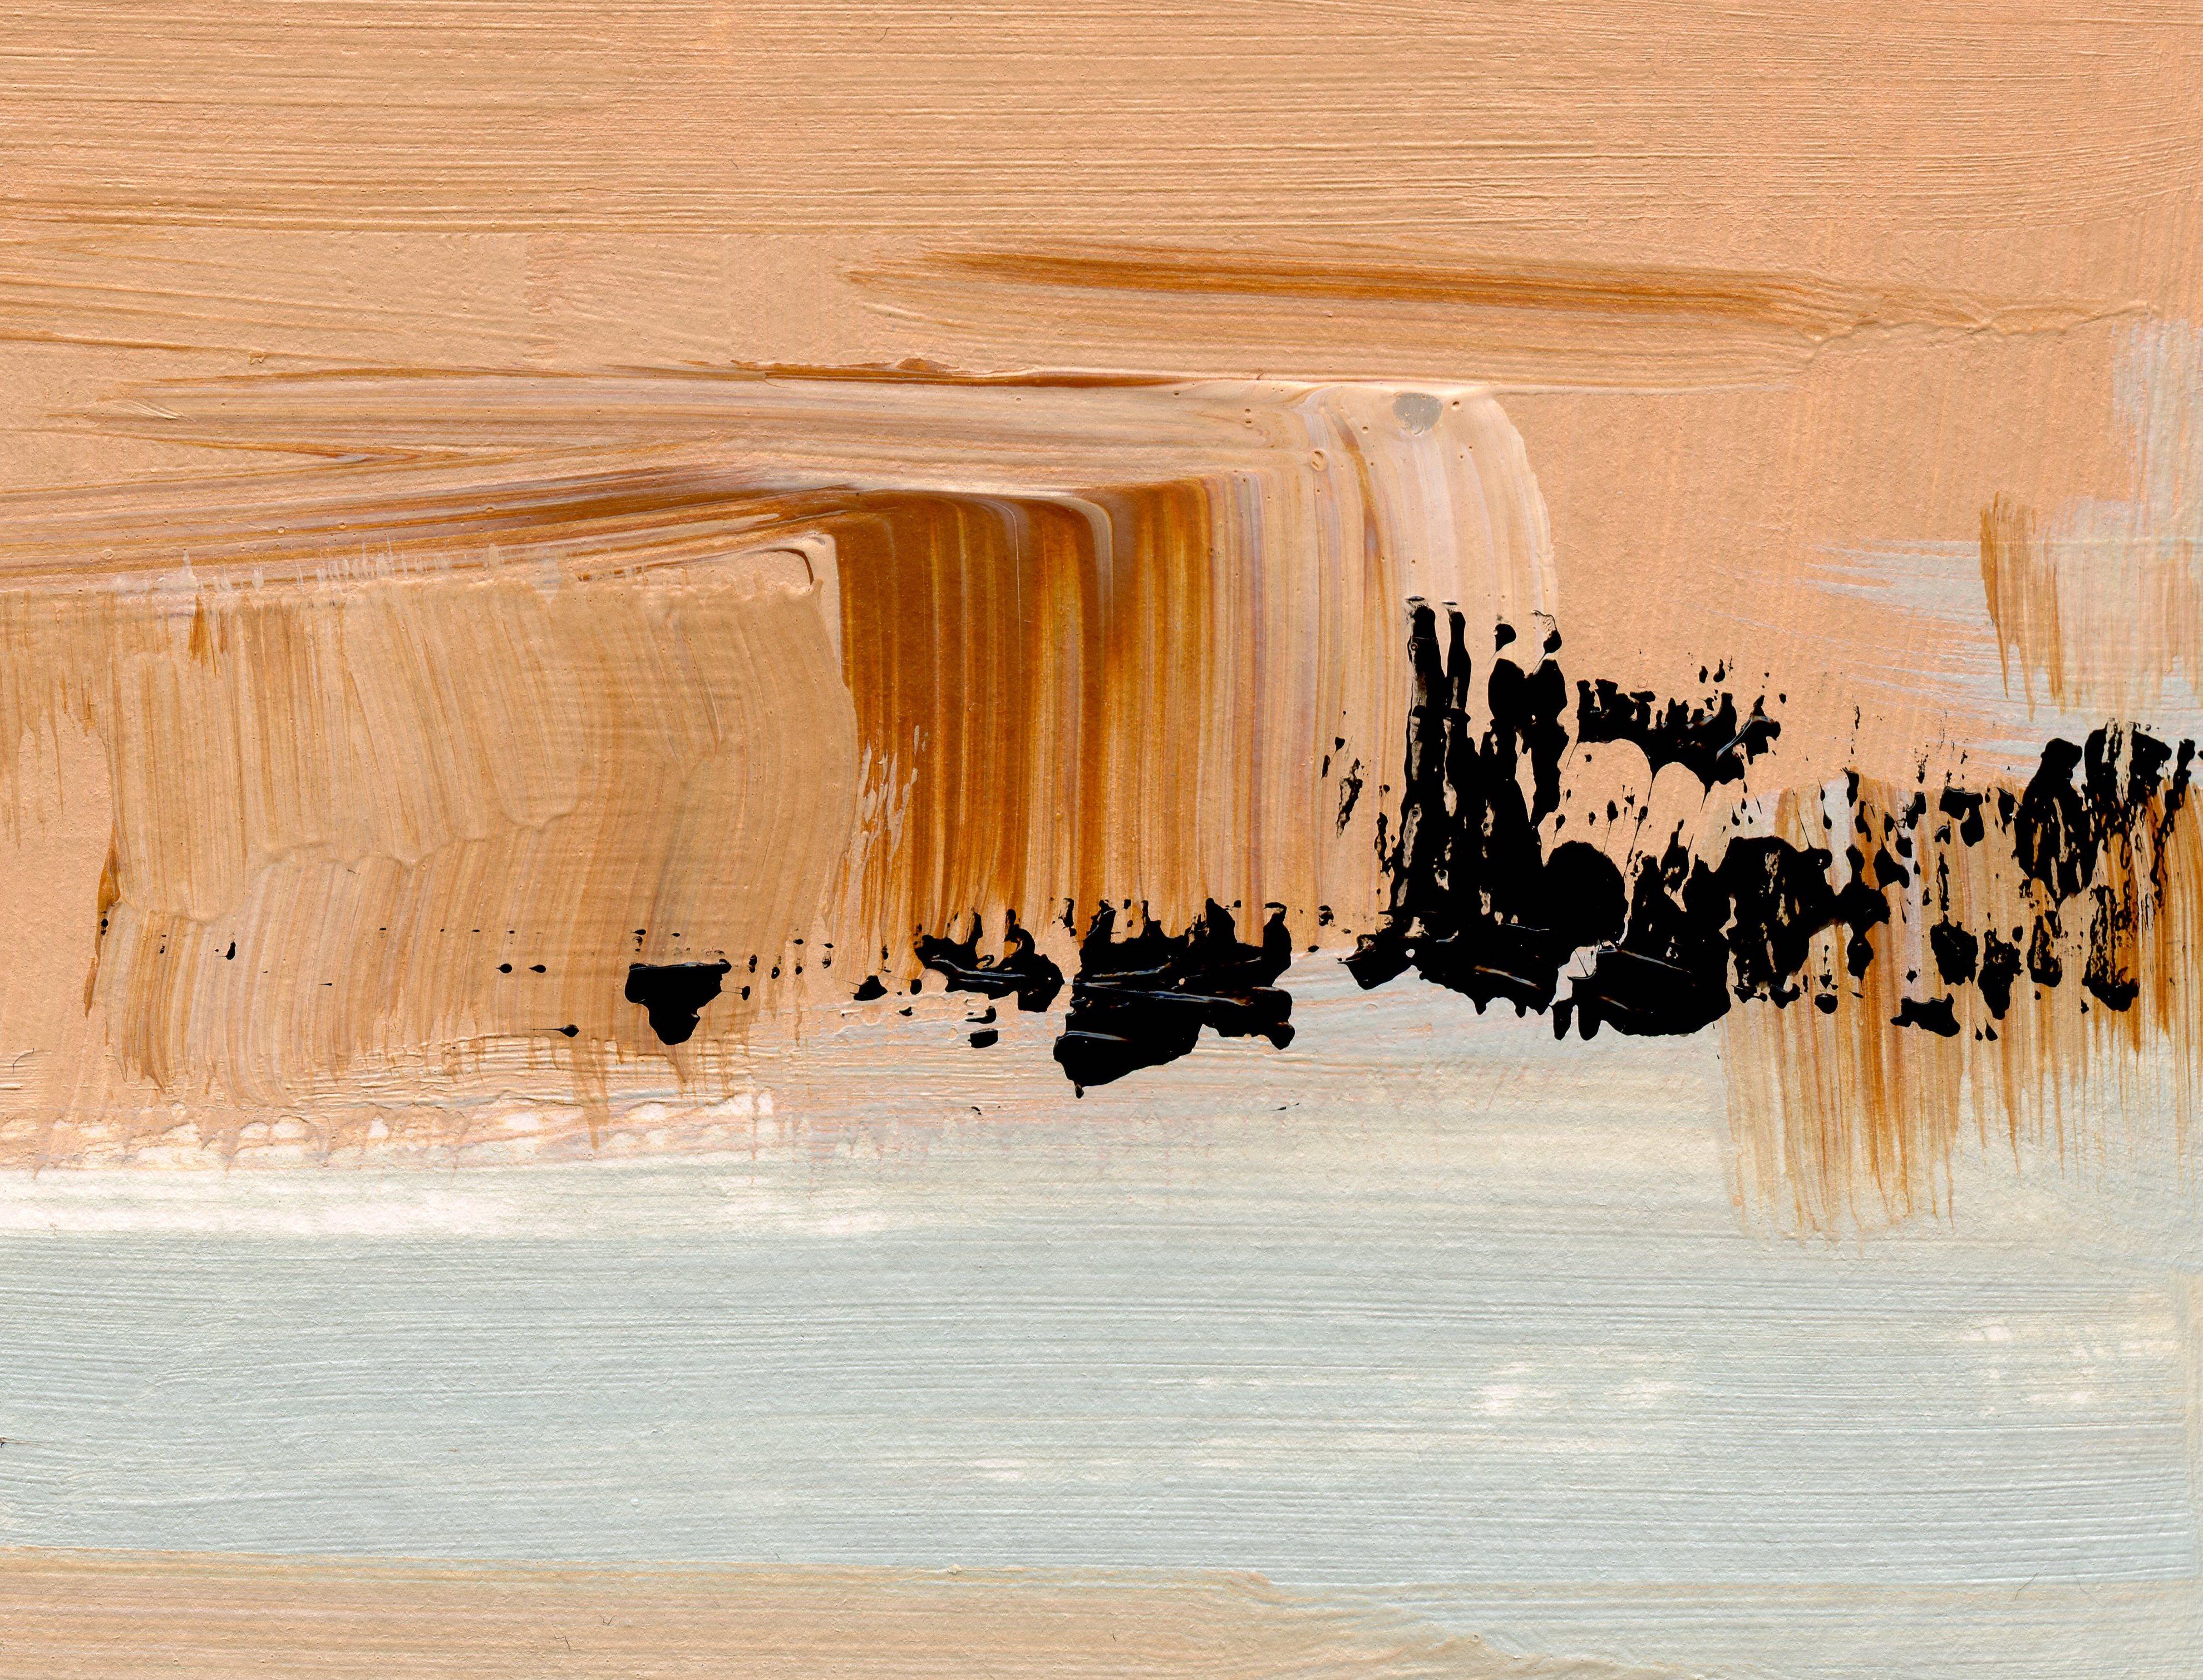 Neutrale Wüste I, Zeitgenössische abstrakte Landschaftsmalerei
12